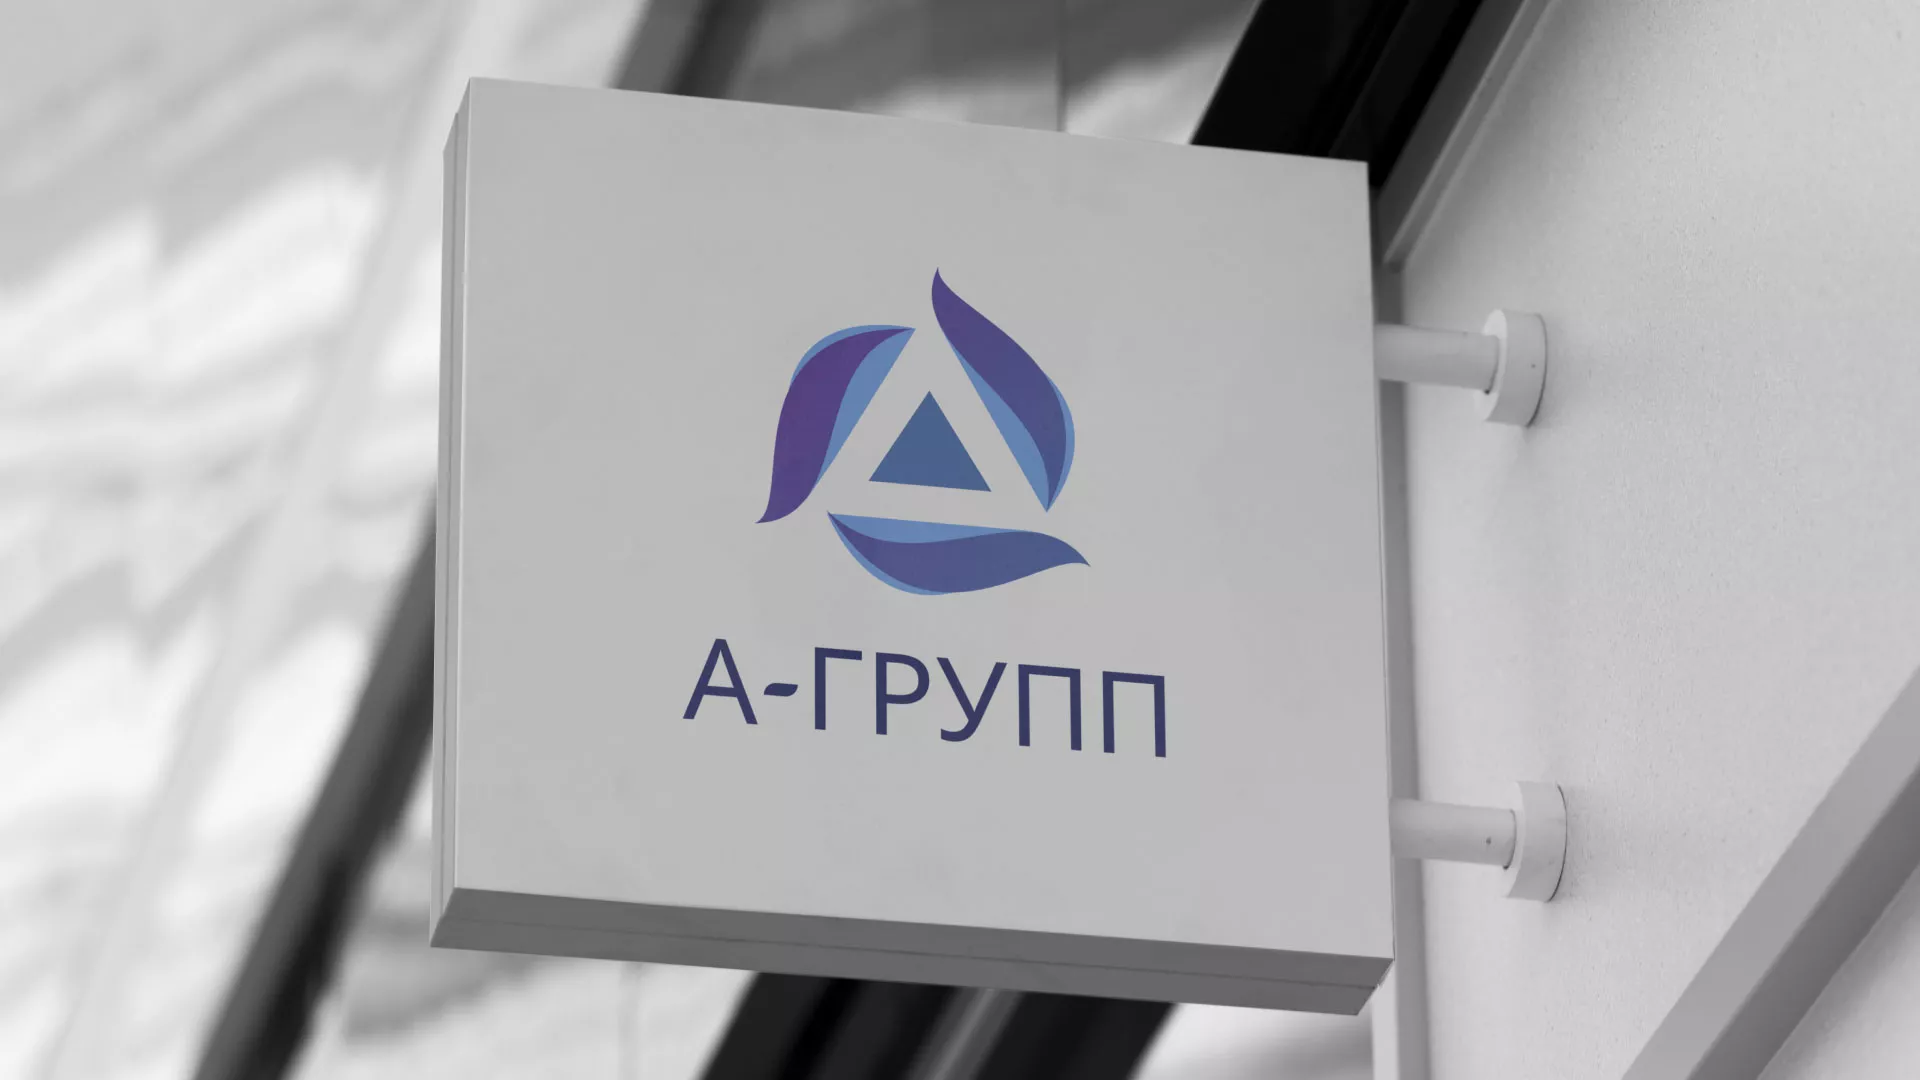 Создание логотипа компании «А-ГРУПП» в Петушках